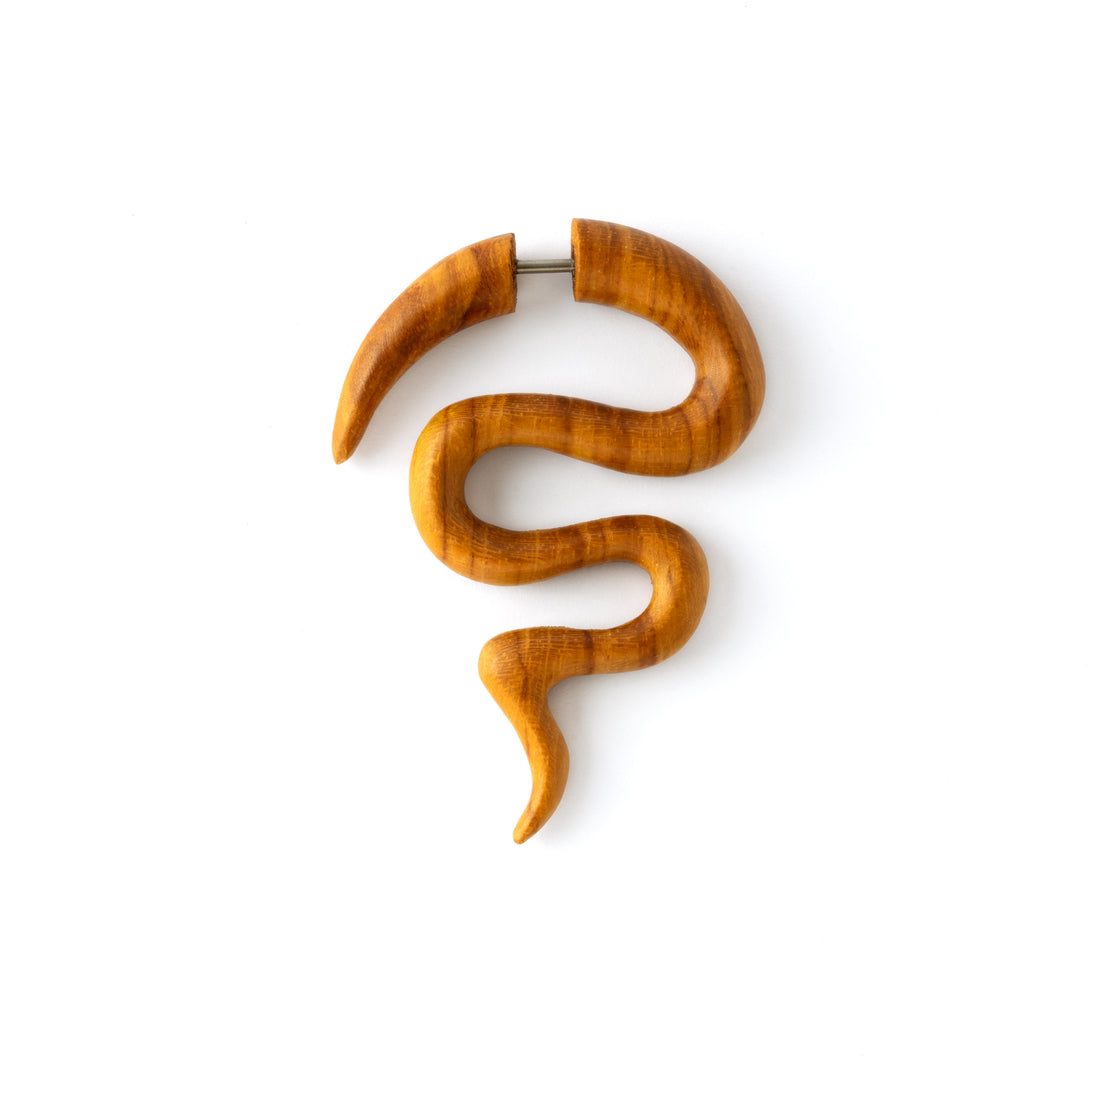 single light wood fake gauge earring in a spiky serpentine shape frontal view